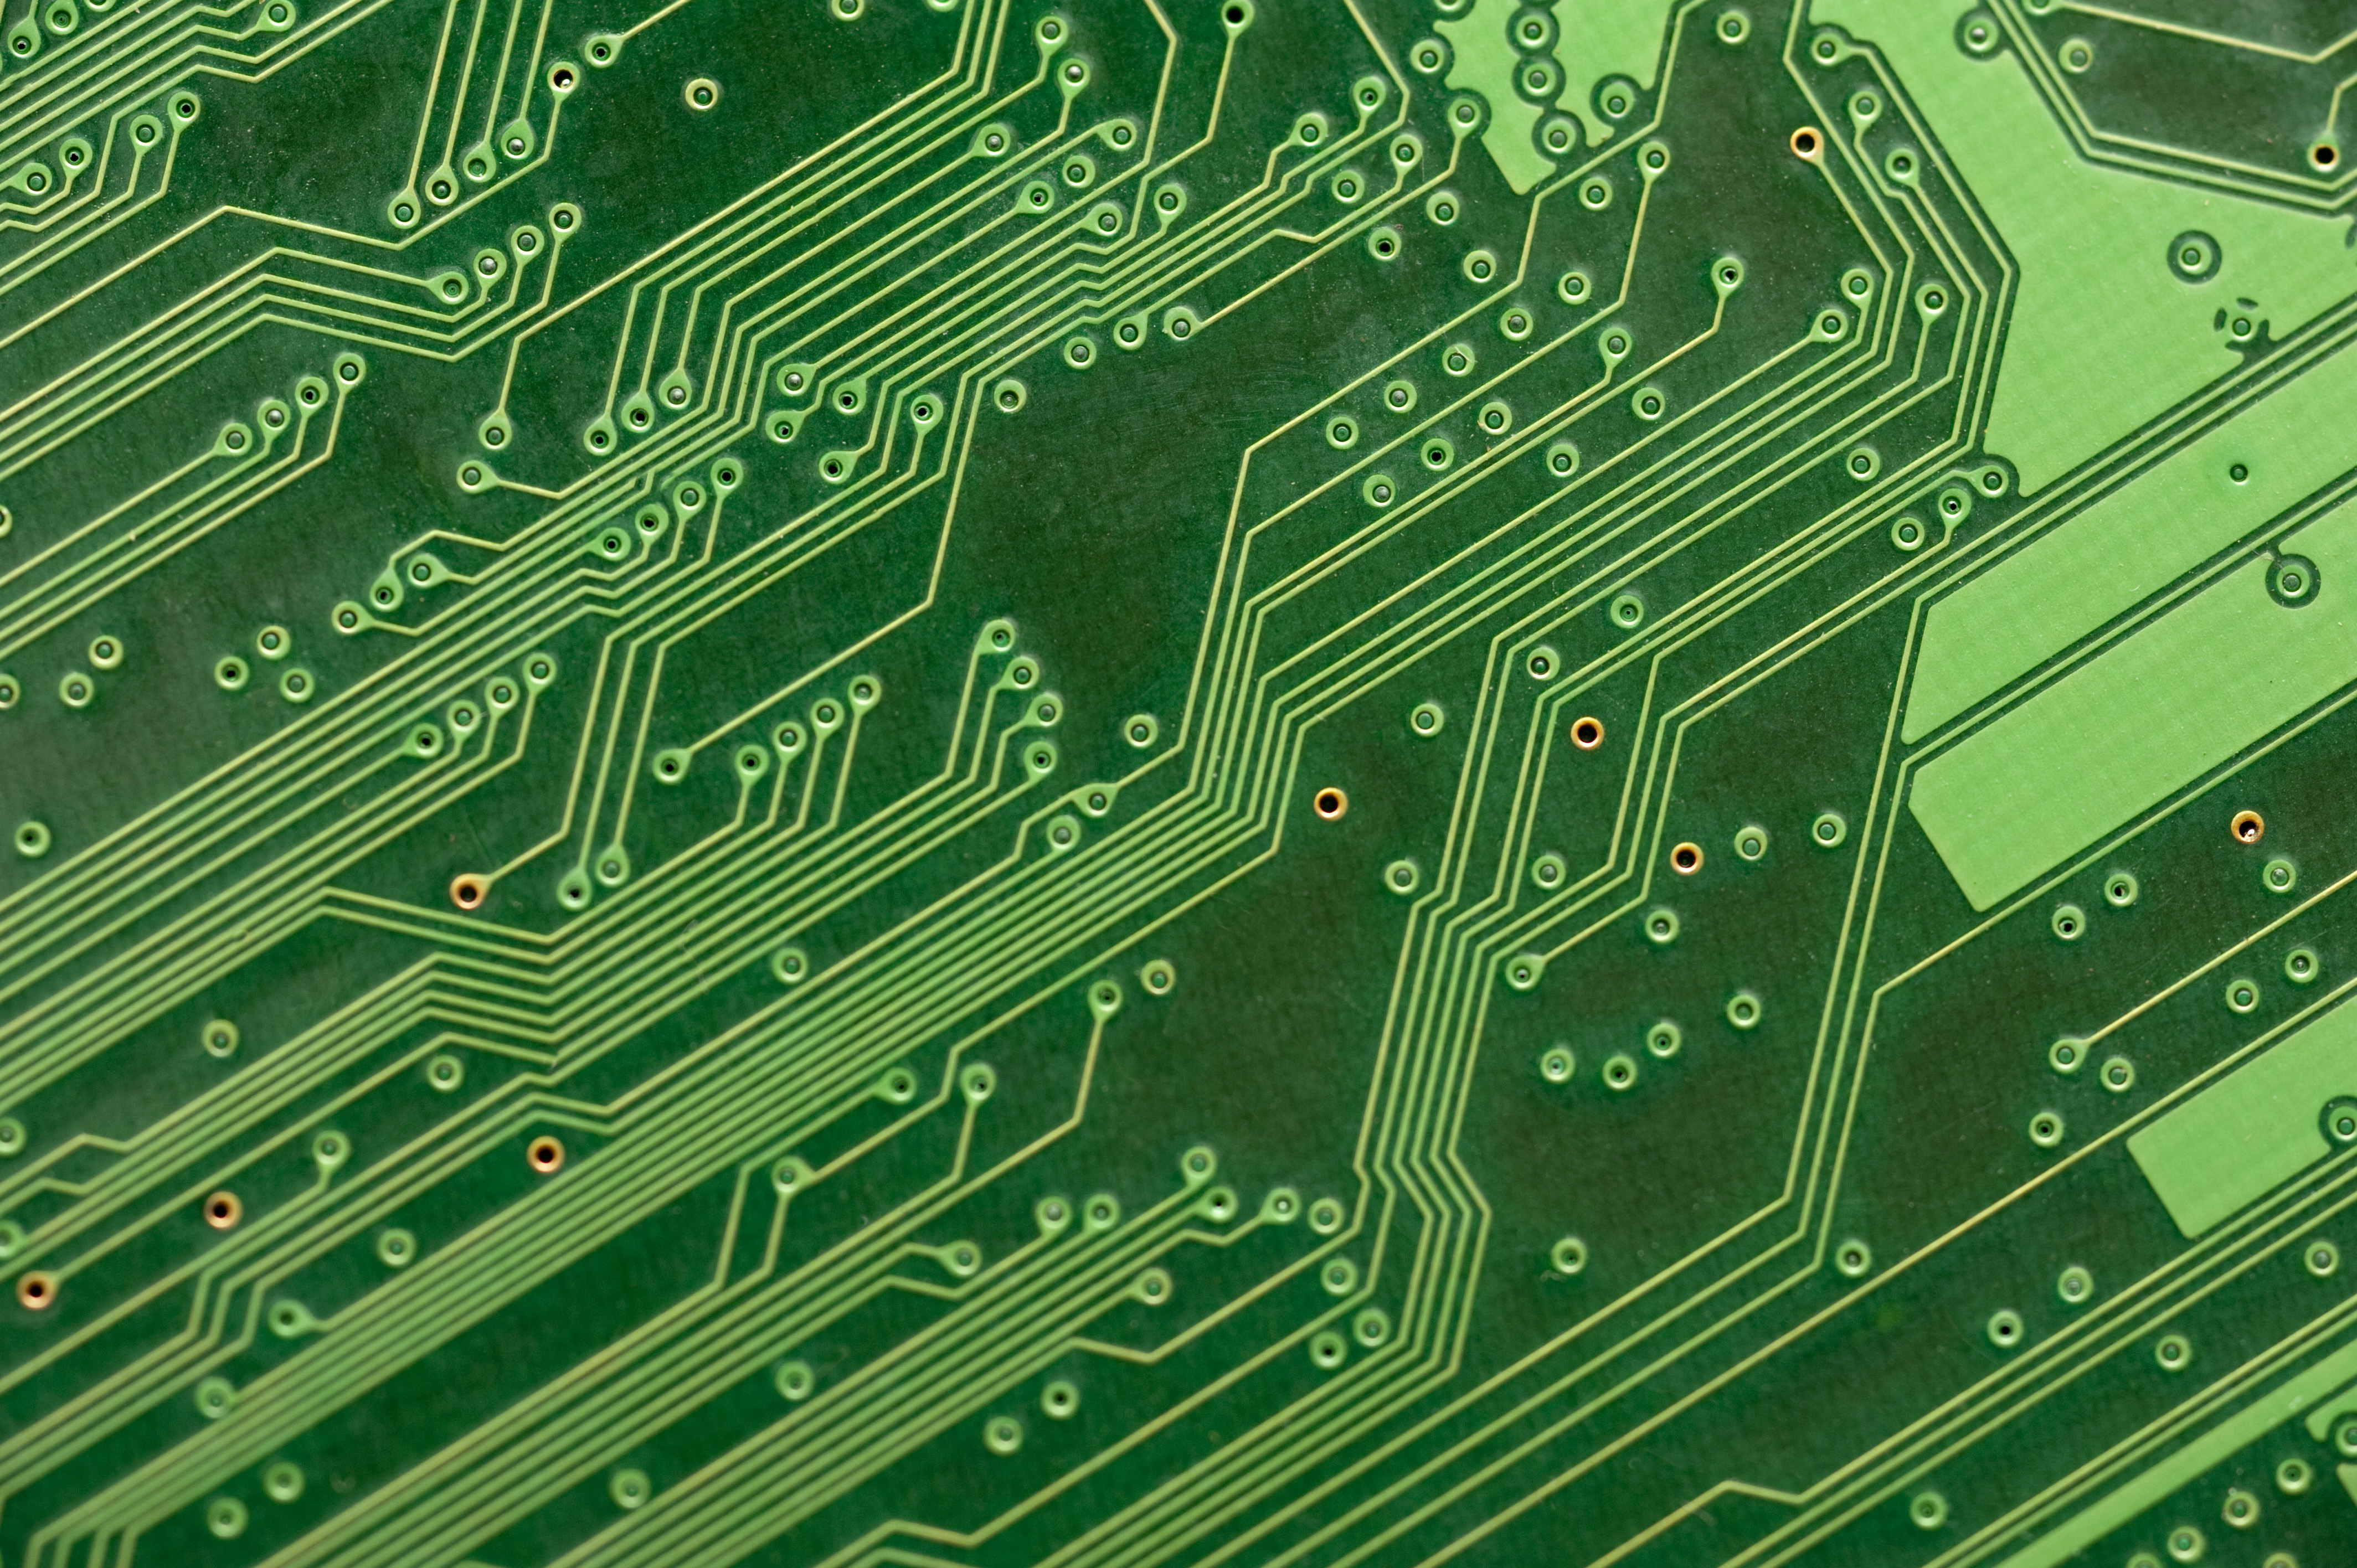 sfondo del circuito,verde,elettronica,componente elettronico,ingegneria elettronica,rete elettrica